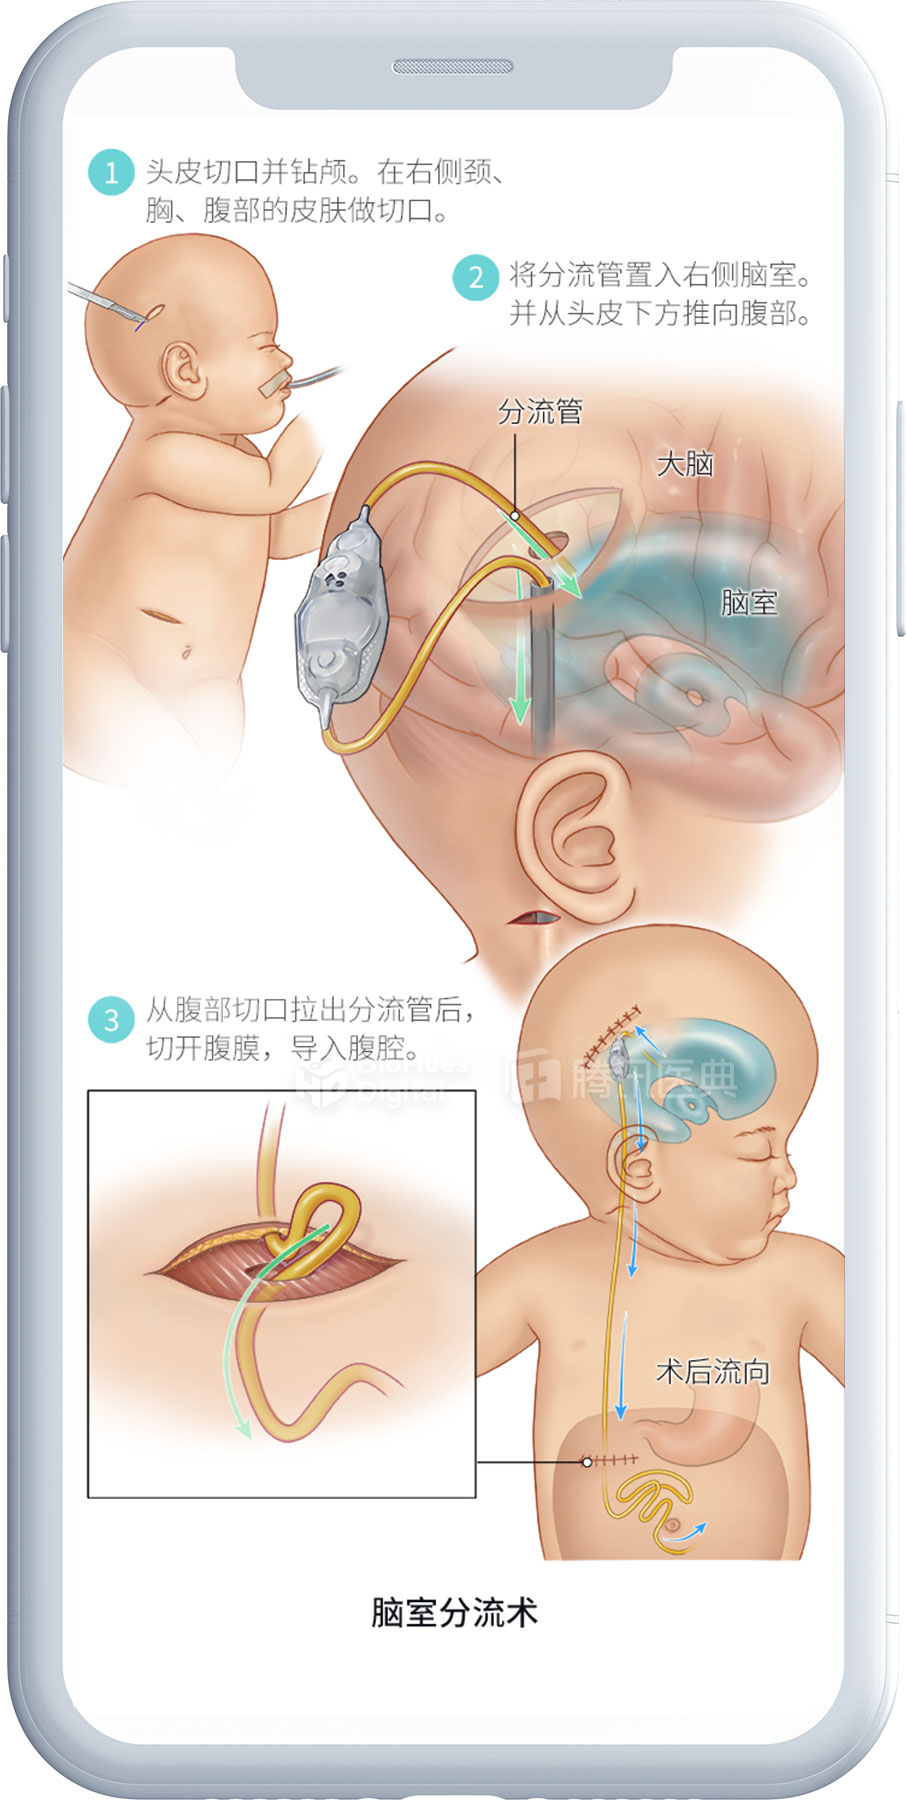 Medical illustration of ventriculoperitonial shunt